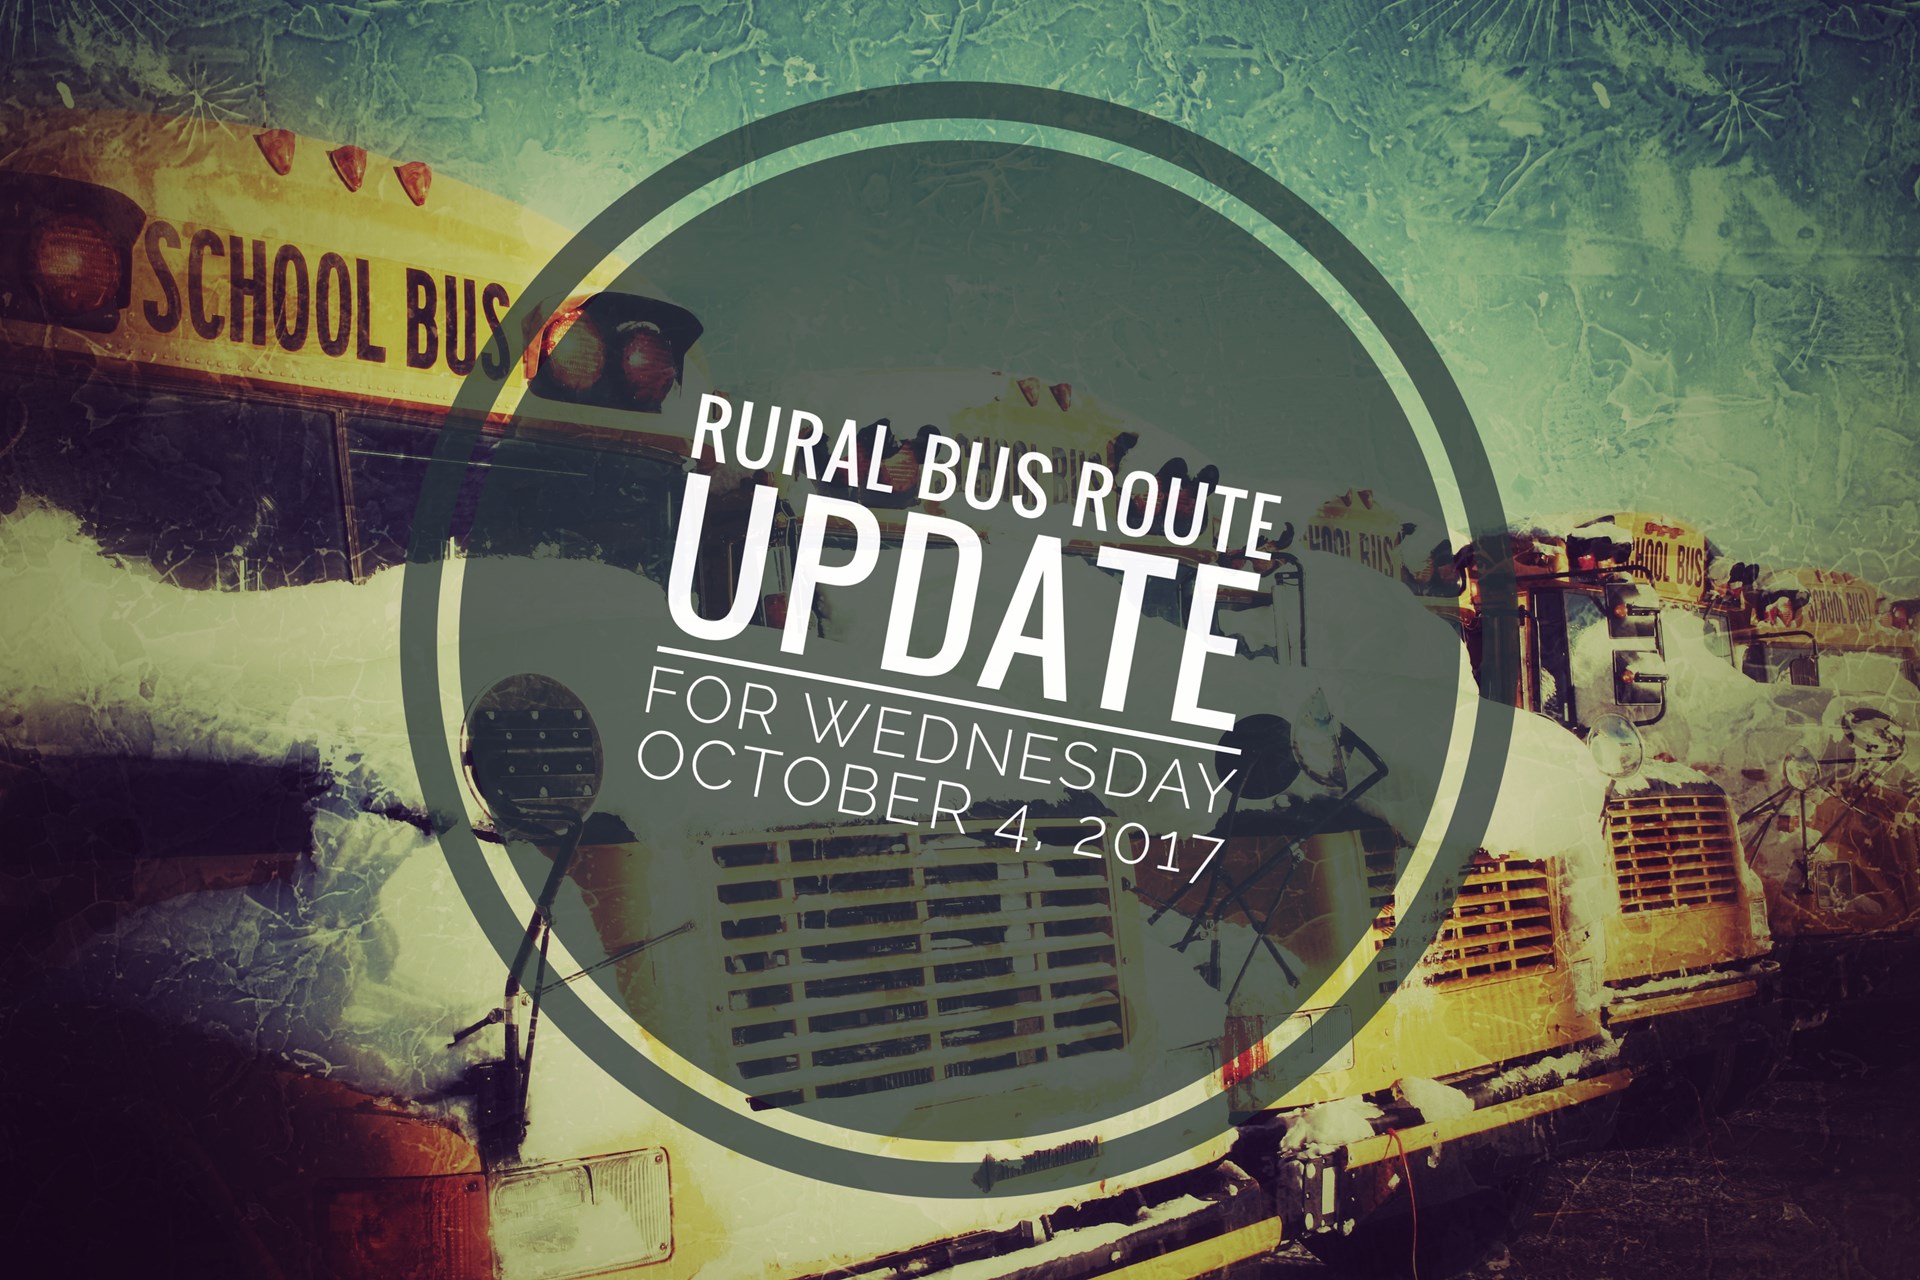 Rural Bus Route Update Oct 4-17.jpg